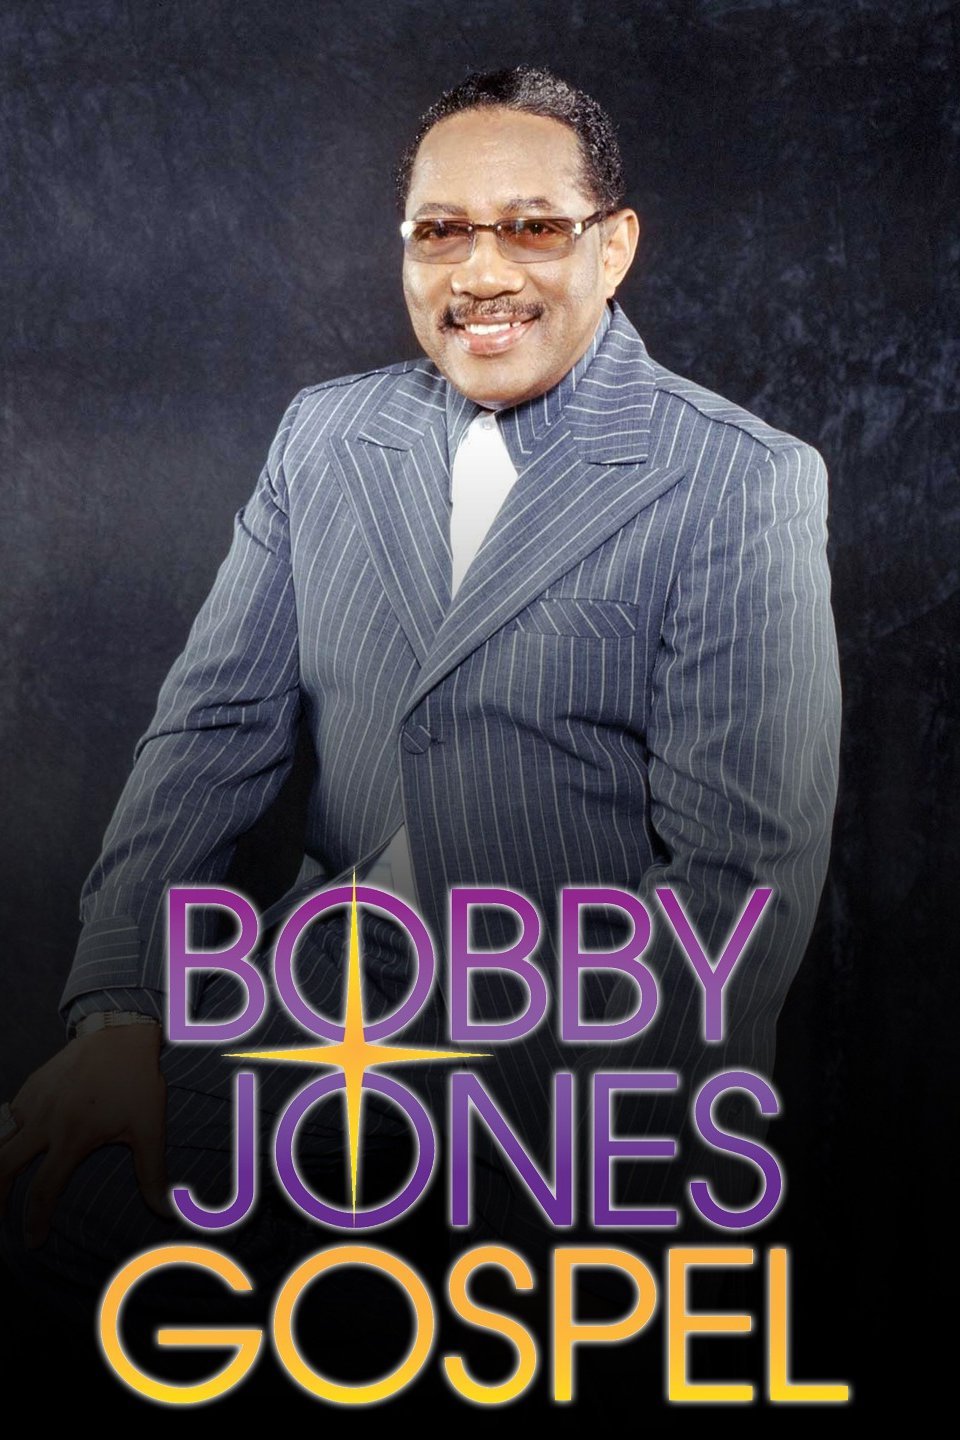 Bobby Jones Gosple Hour